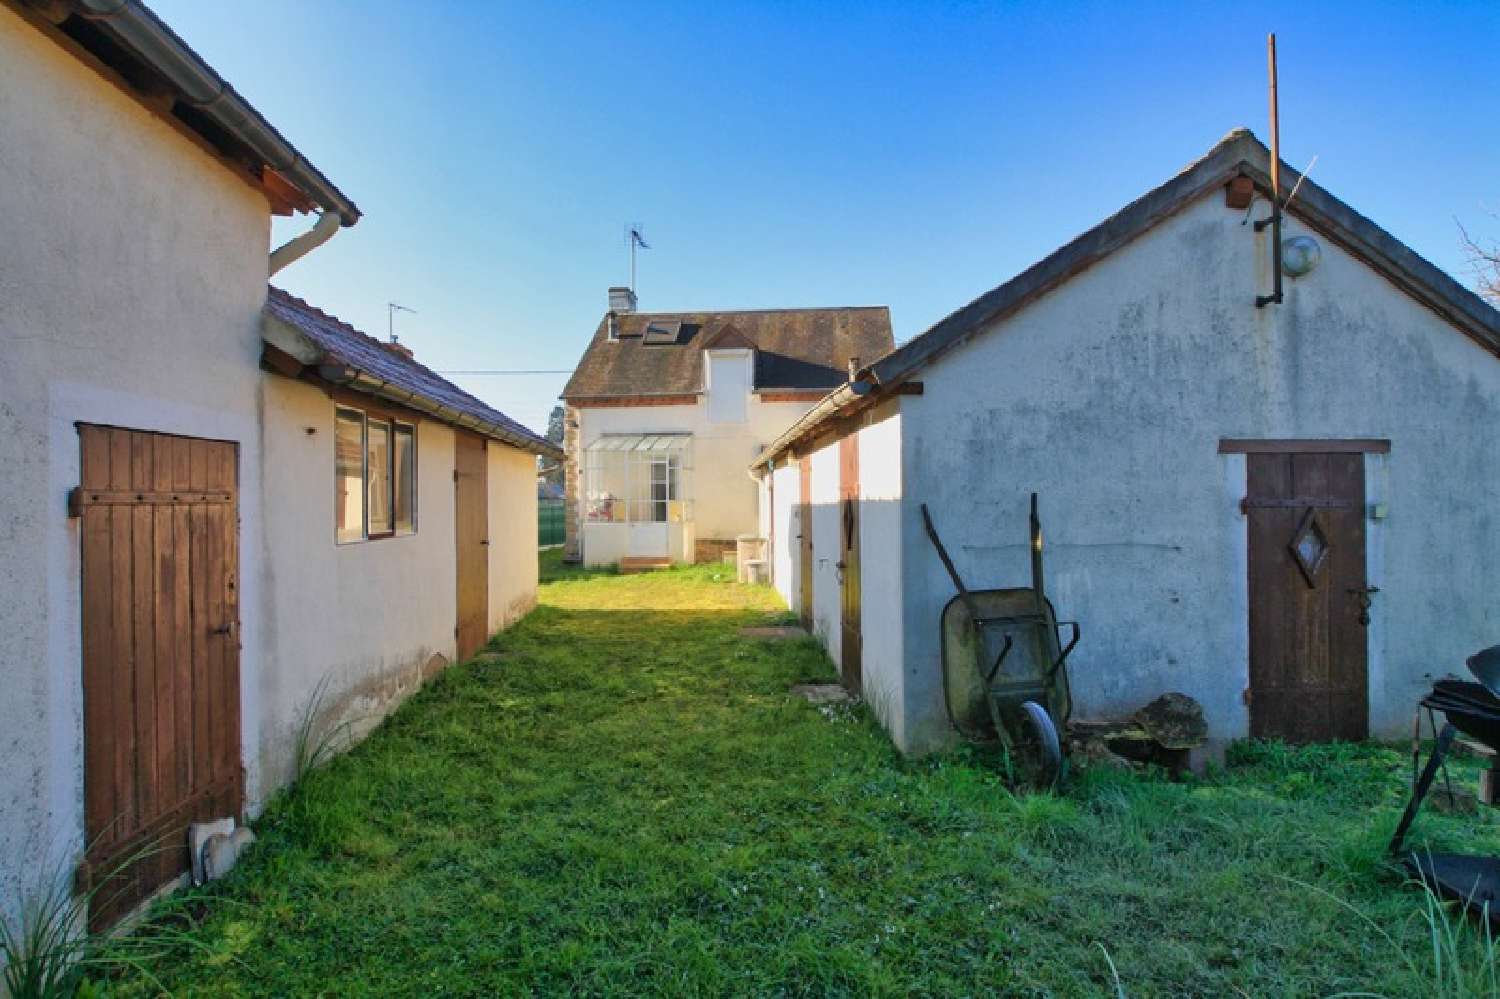  à vendre maison Dompierre-sur-Besbre Allier 5